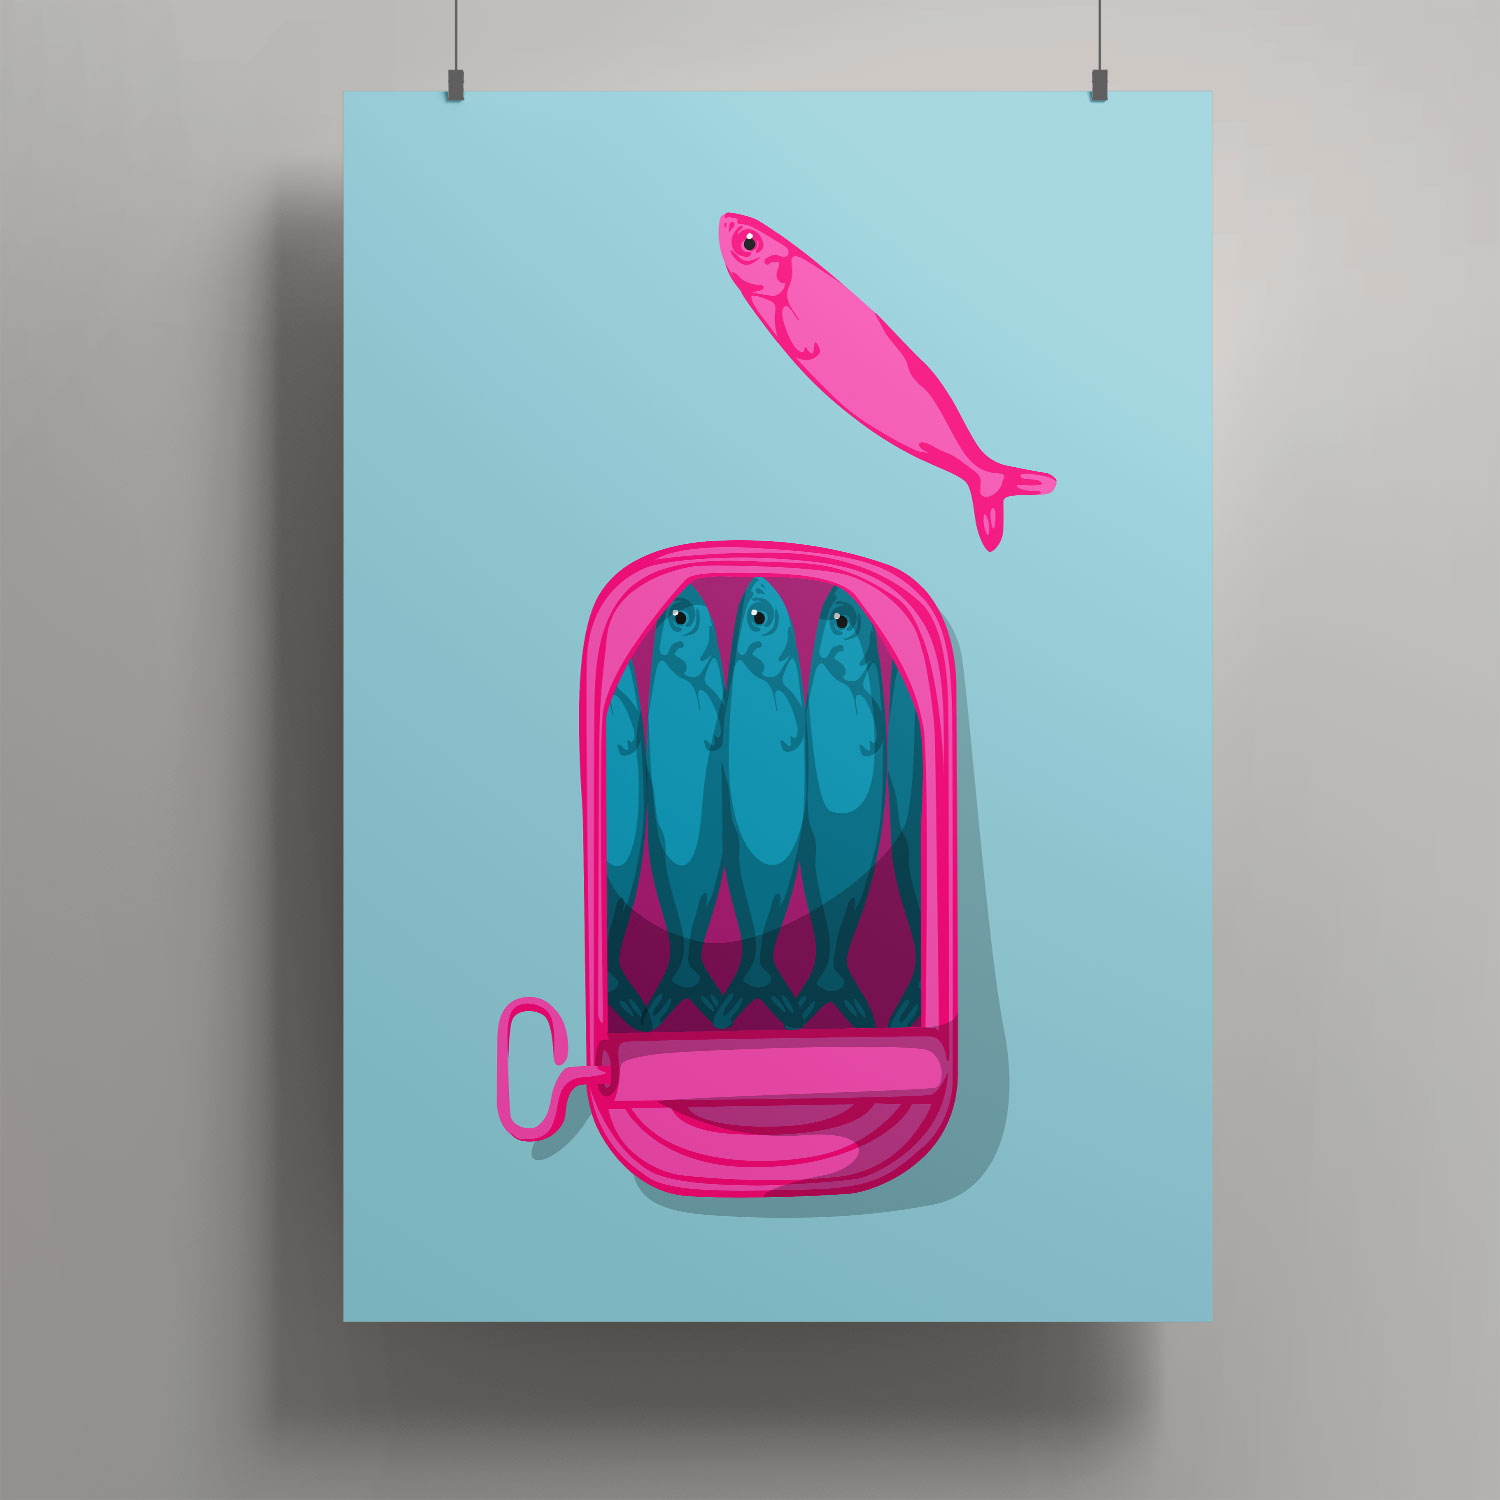 Artprint A3 - Fischdose